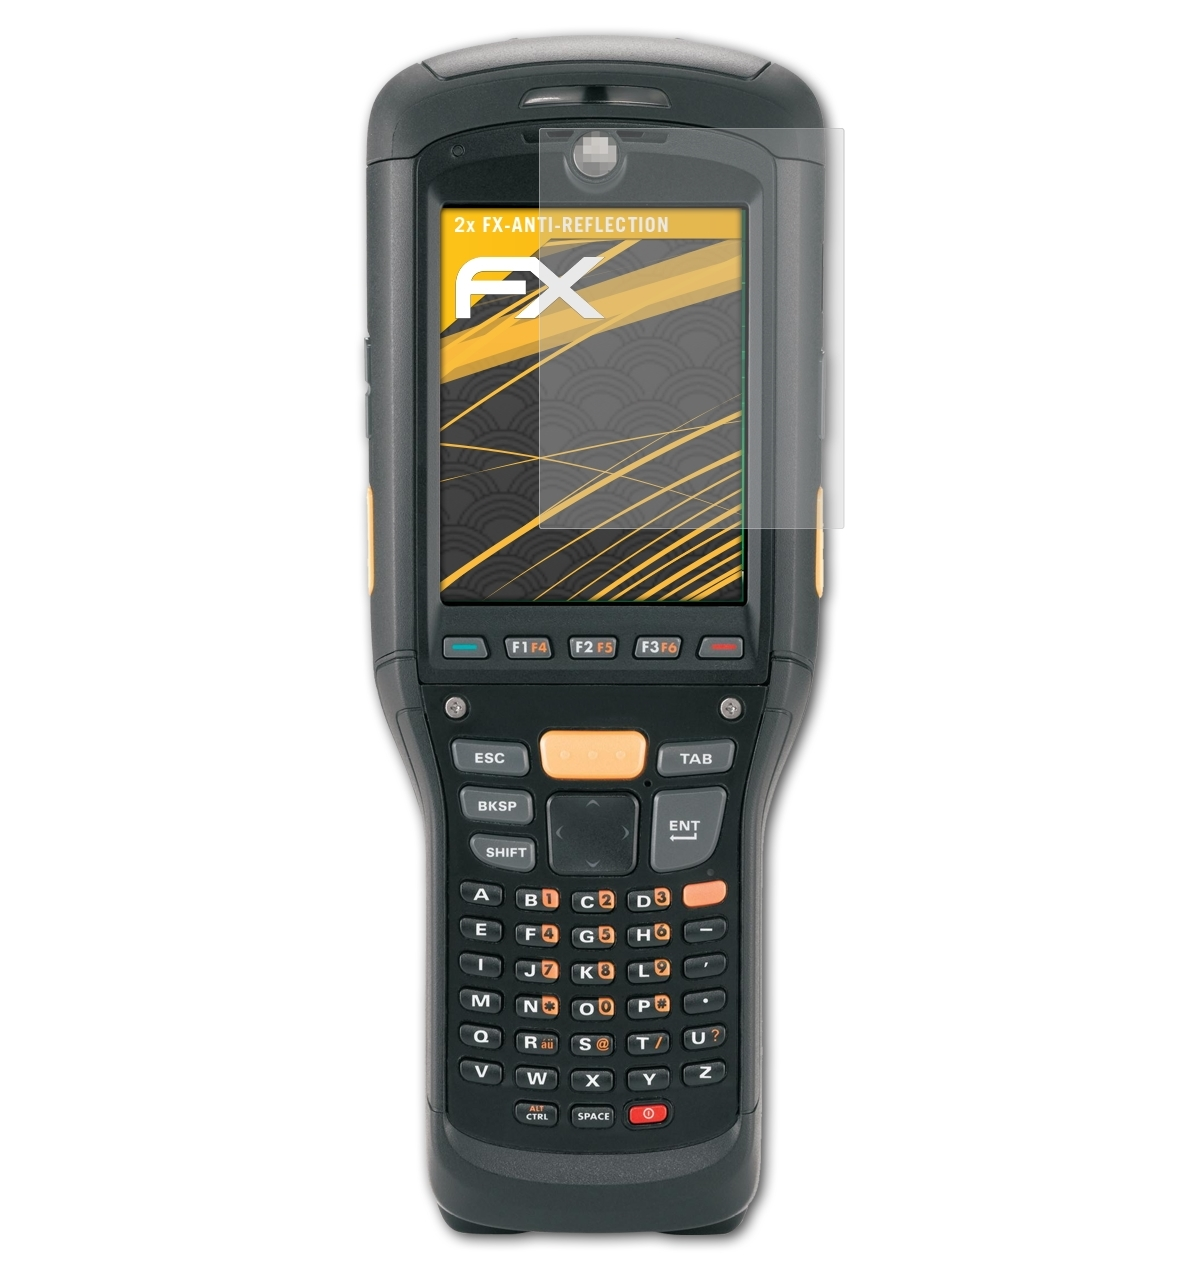 2x FX-Antireflex Displayschutz(für ATFOLIX Motorola MC9500-K)